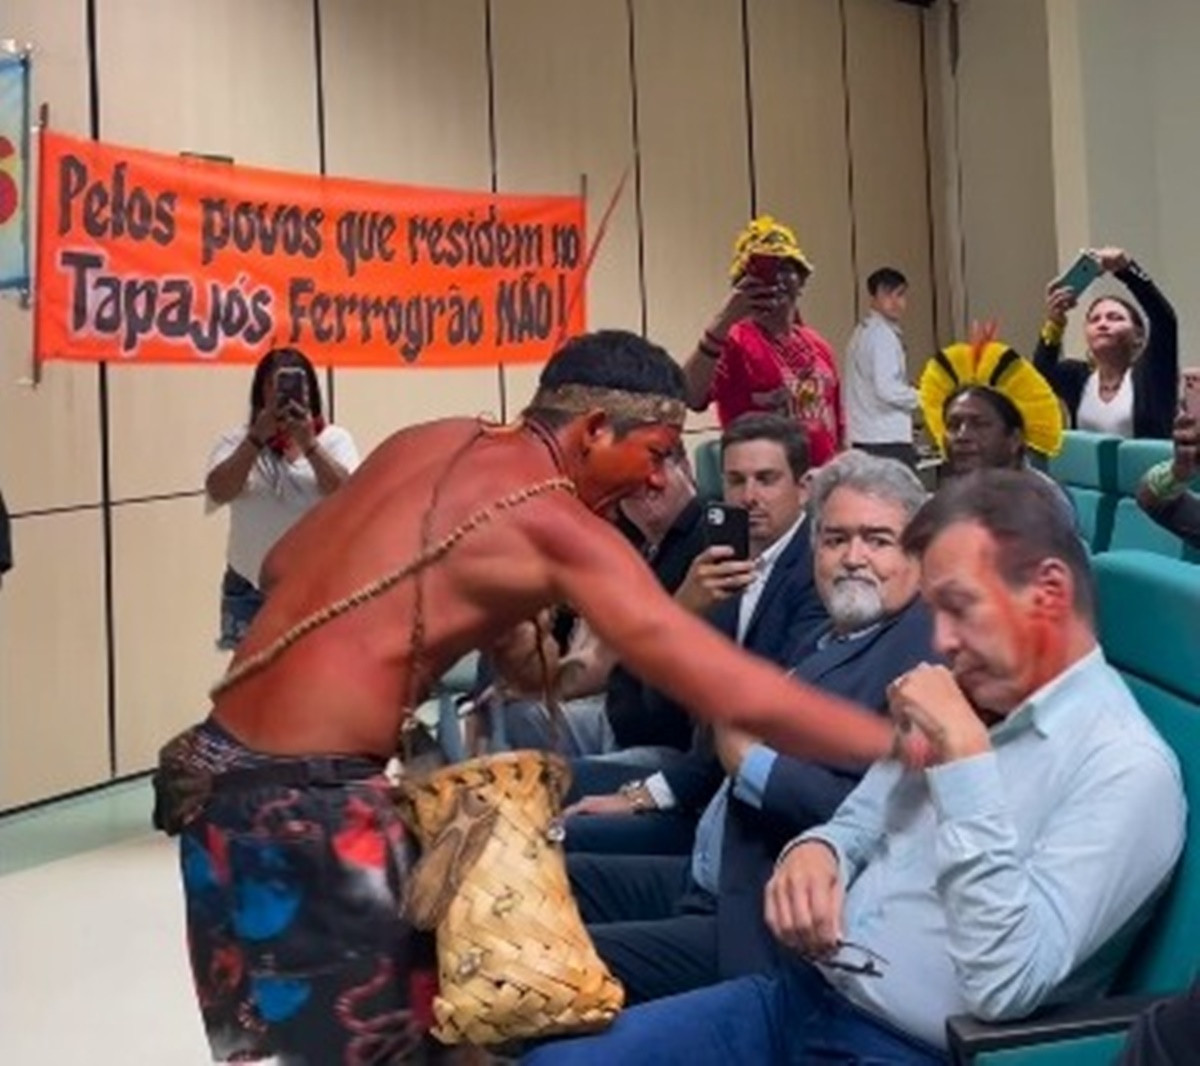 Indígena passa urucum em participantes de evento em protesto contra Ferrogrão